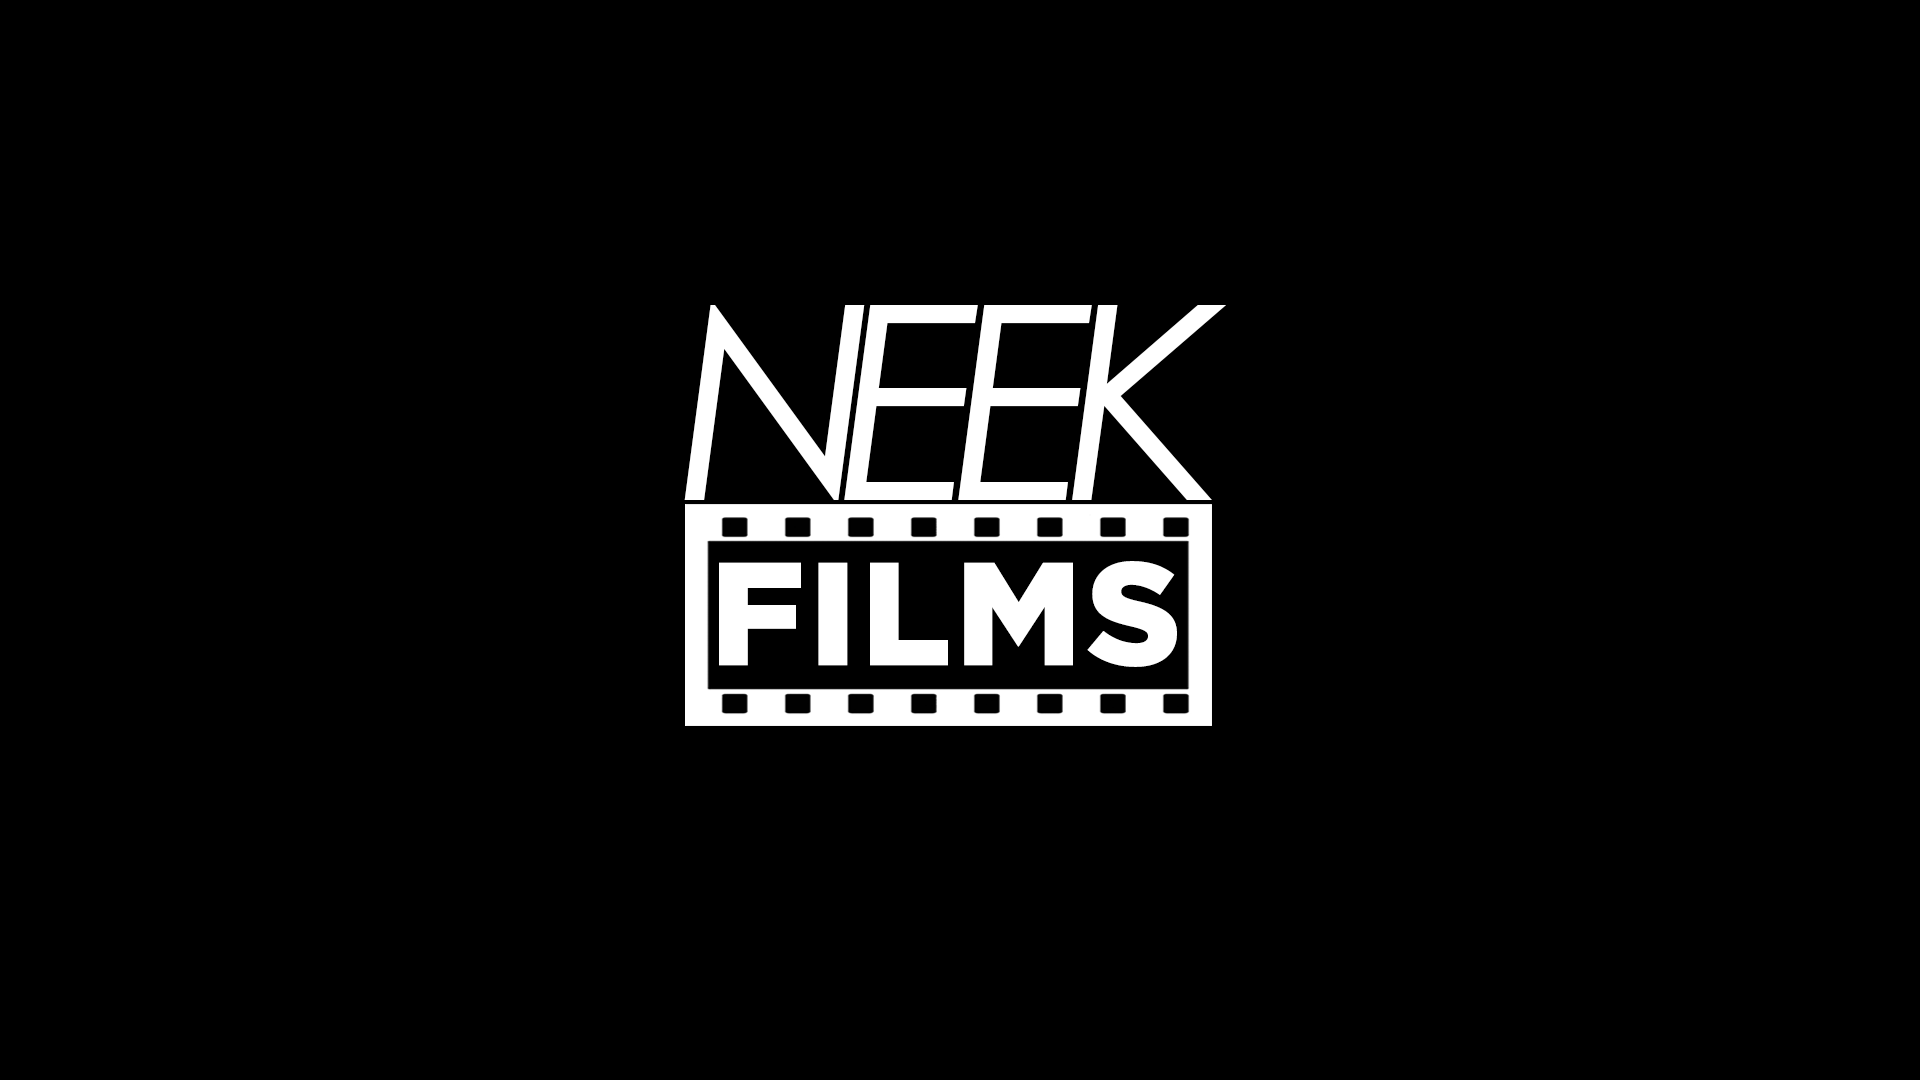 Neek.infos